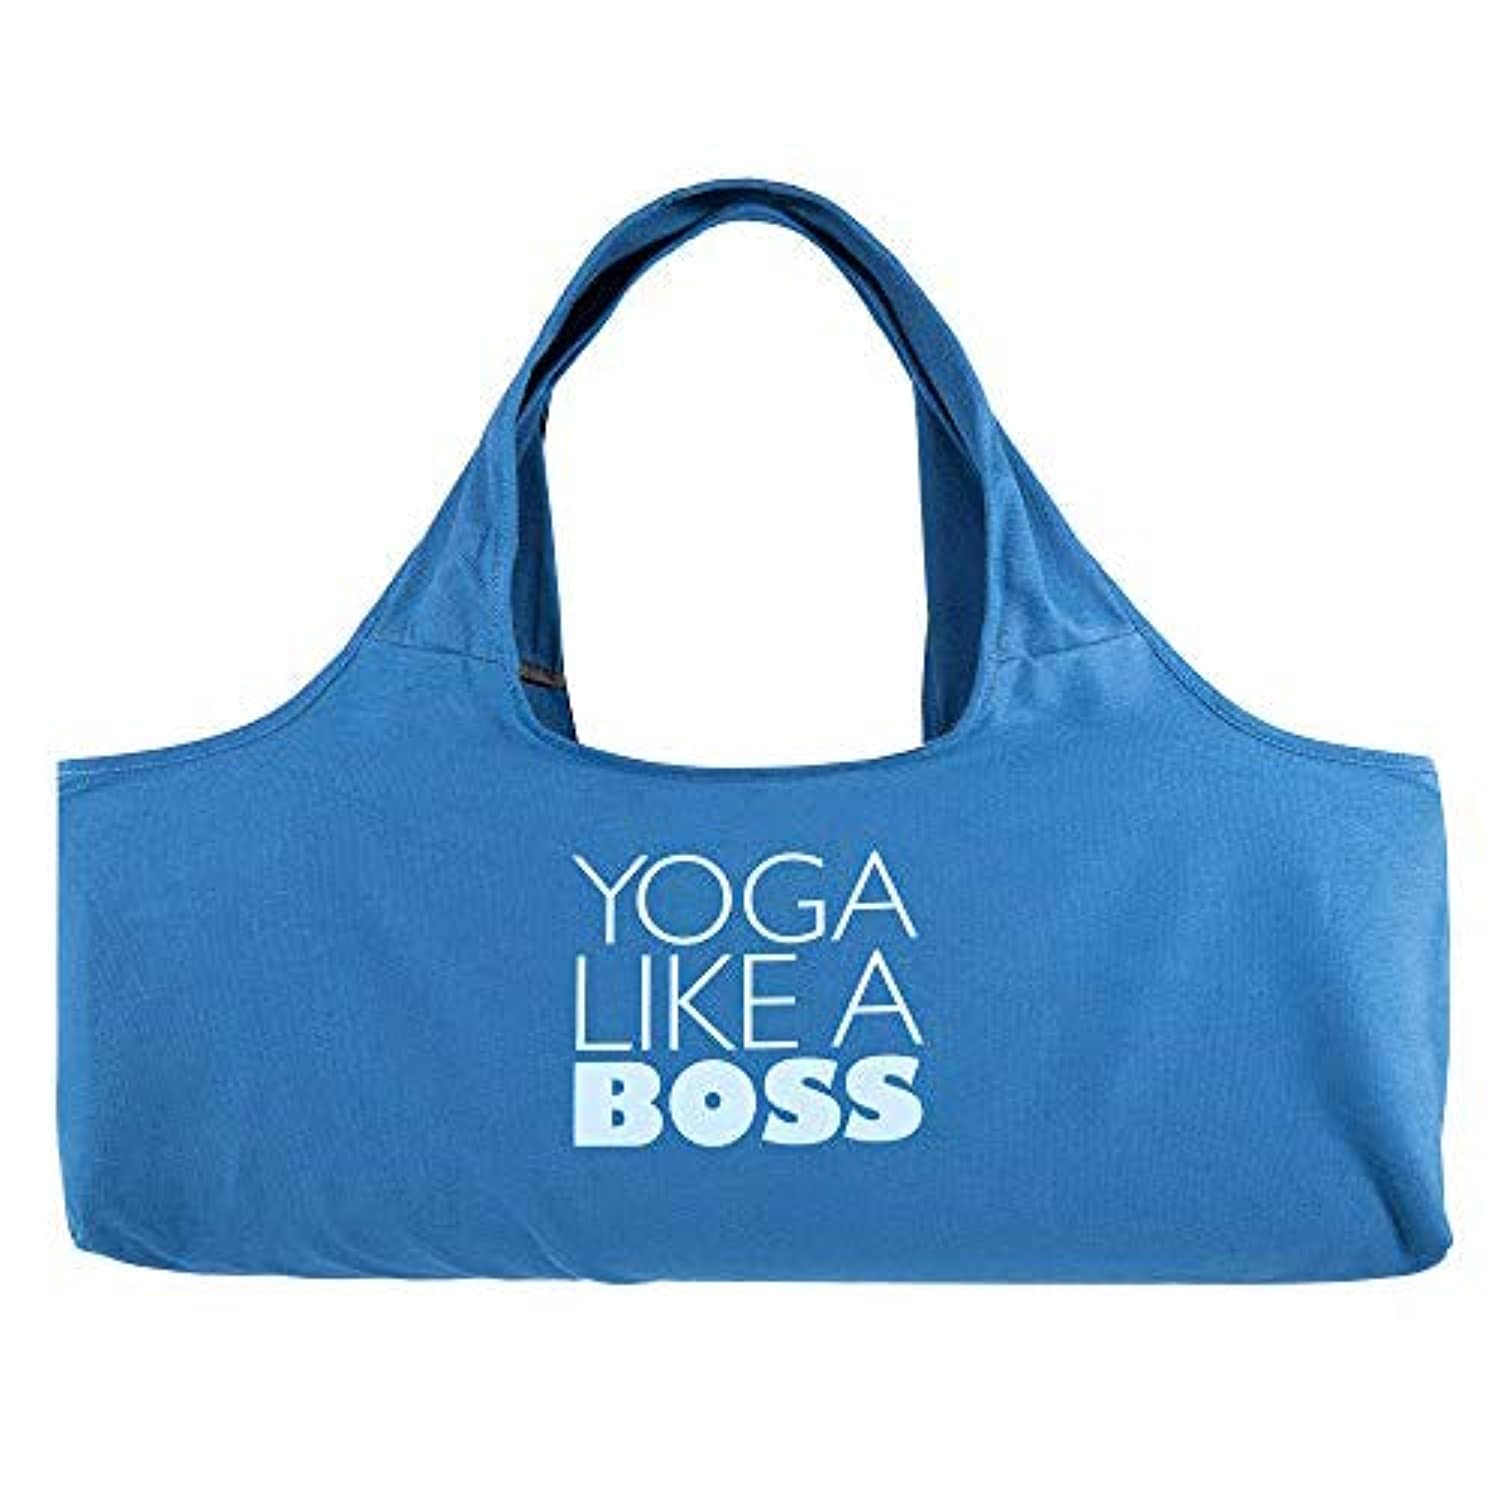 Bolsa de yoga, bolsa para esterilla, funda esterilla yoga Hatha, yoga  bag, porta esterilla yoga para colchonetas de hasta 62cm de ancho, bolsillo